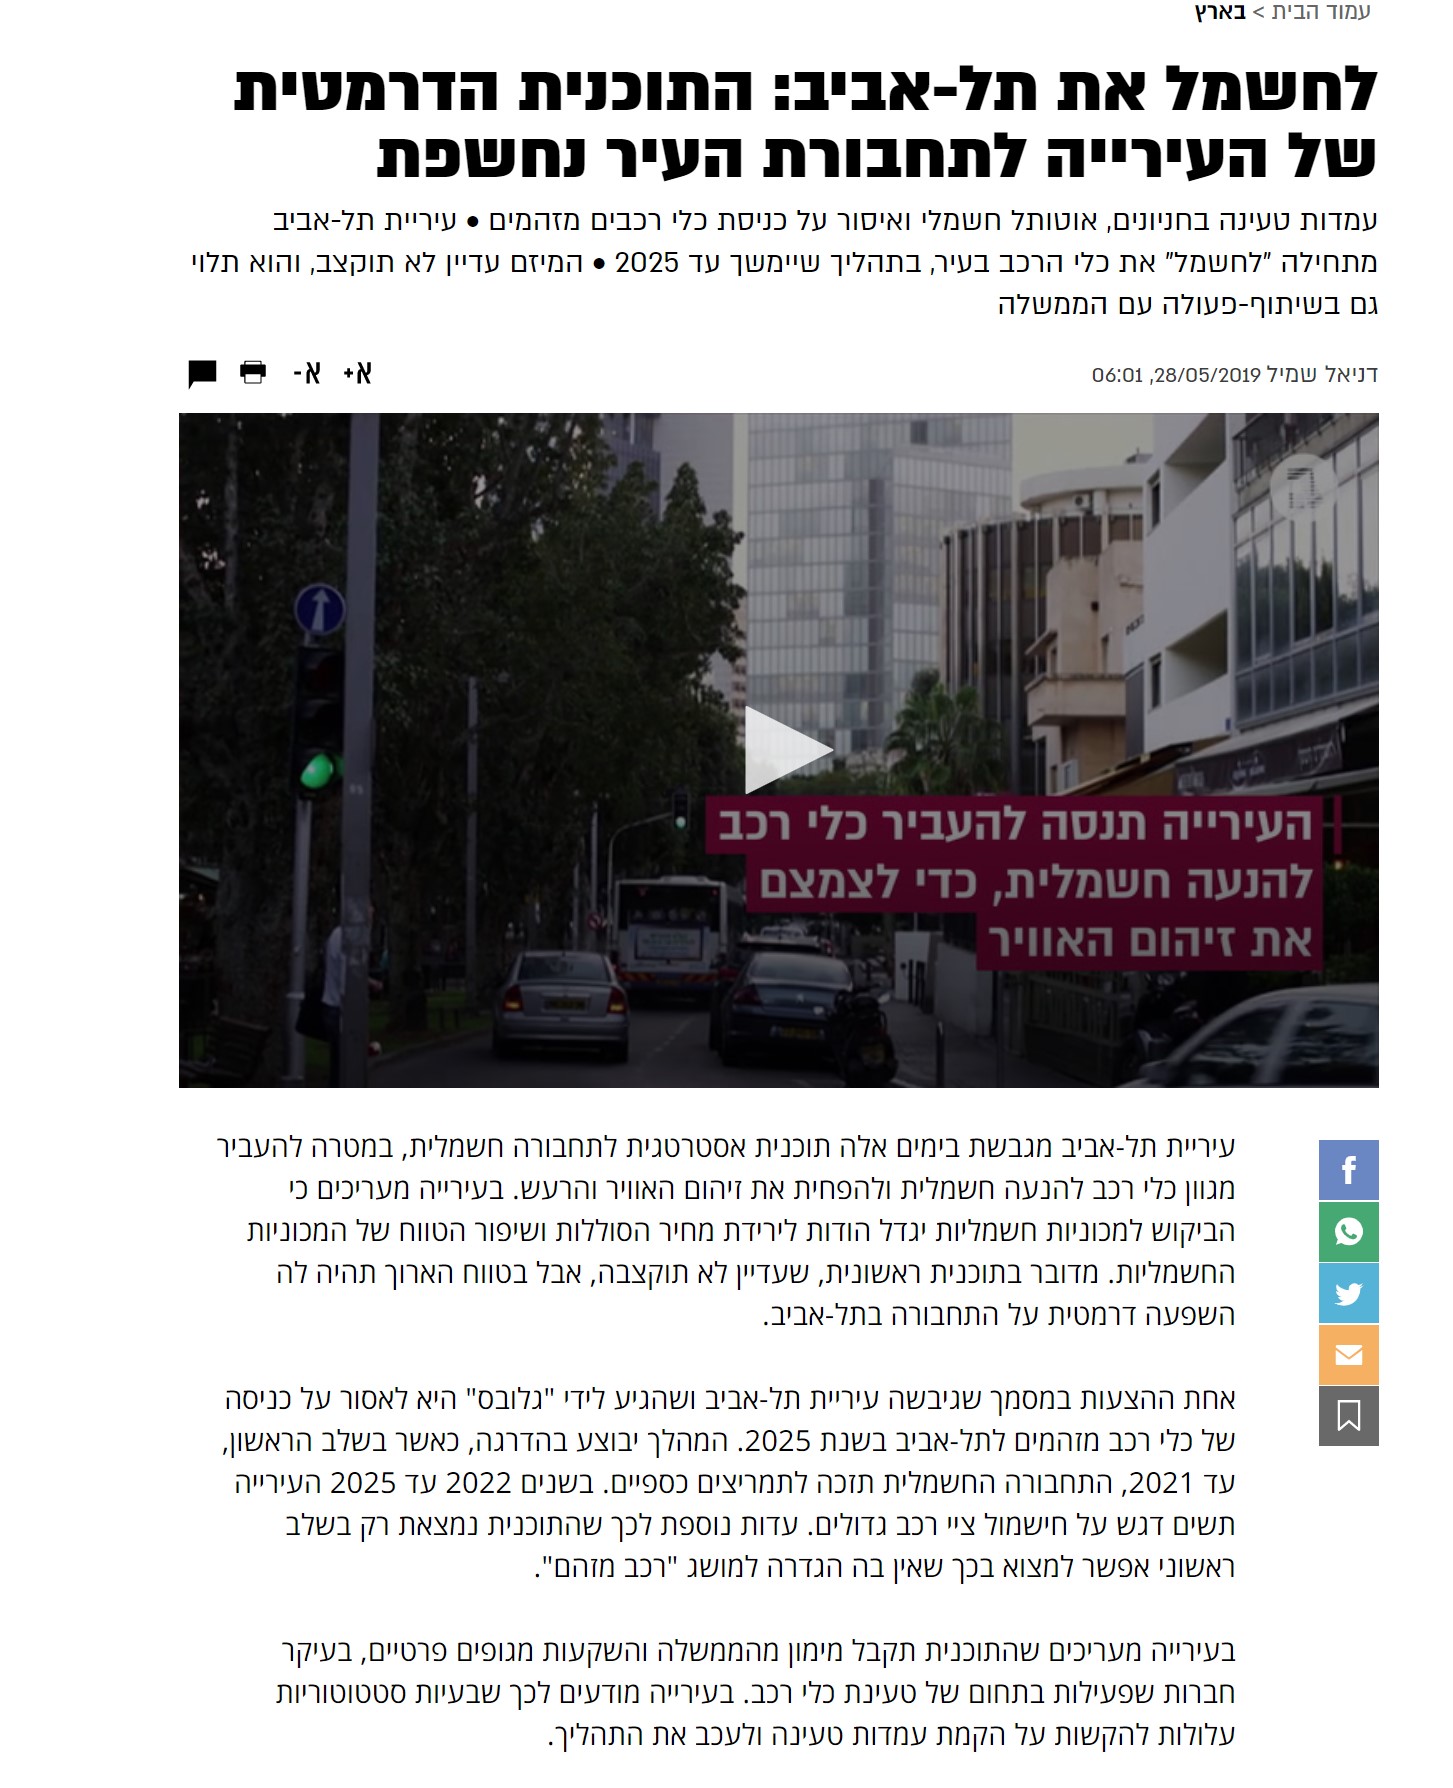 לחשמל את תל-אביב: התוכנית הדרמטית של העירייה לתחבורת העיר נחשפת